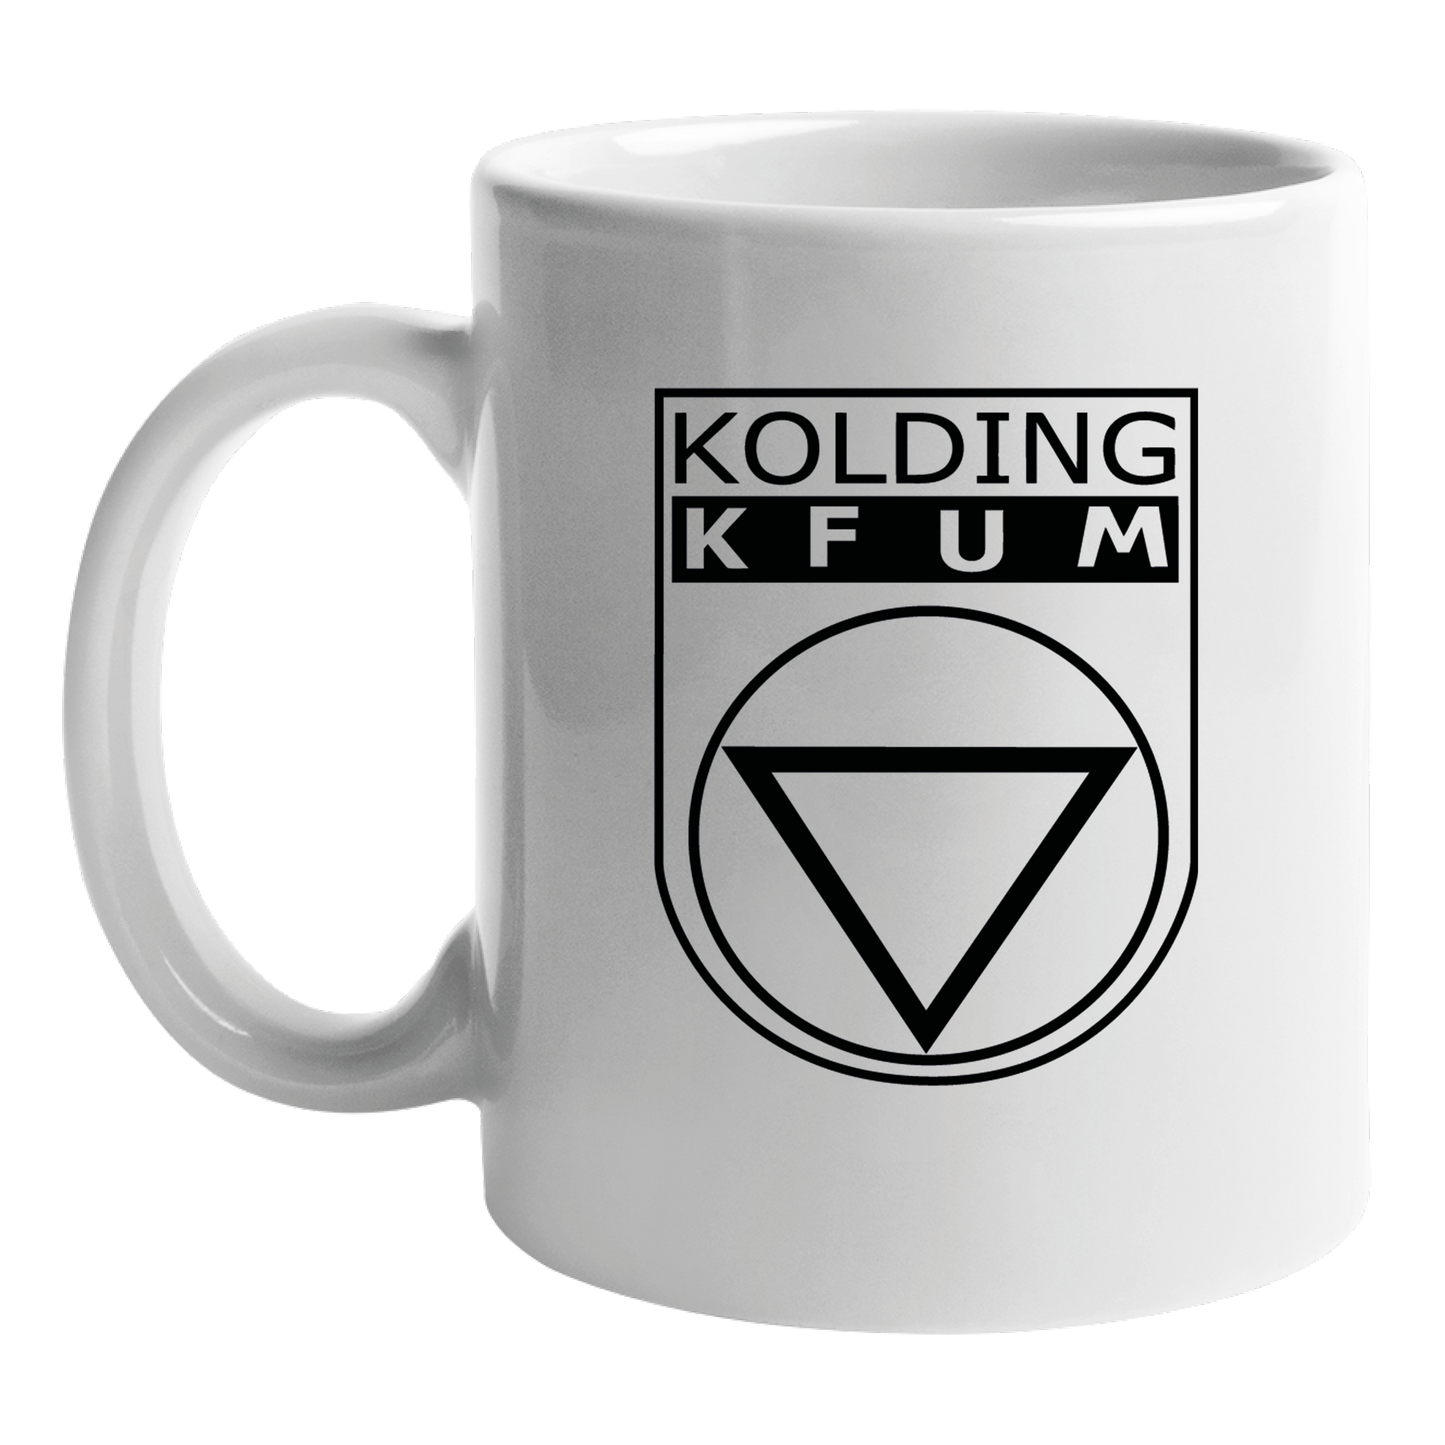 Kop med klub logo - KOLDING KFUM